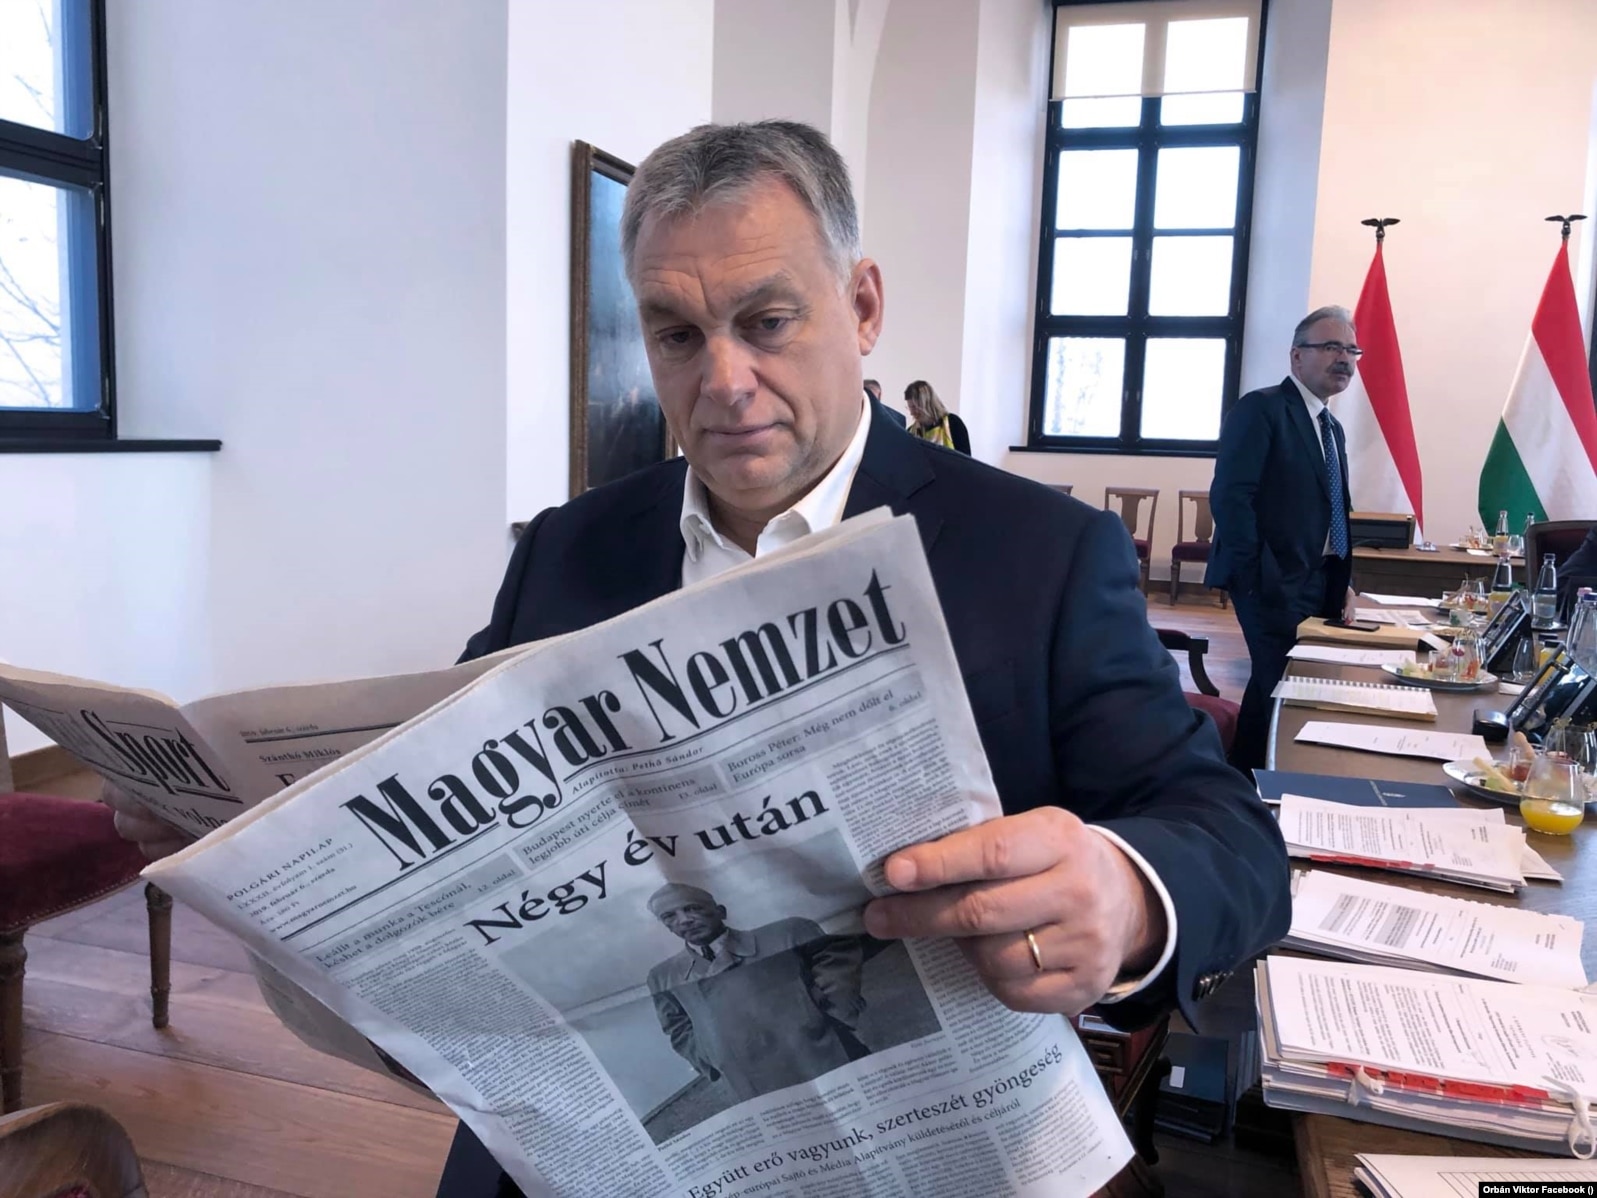 Віктор Орбан вже 11 років поспіль очолює уряд Угорщини